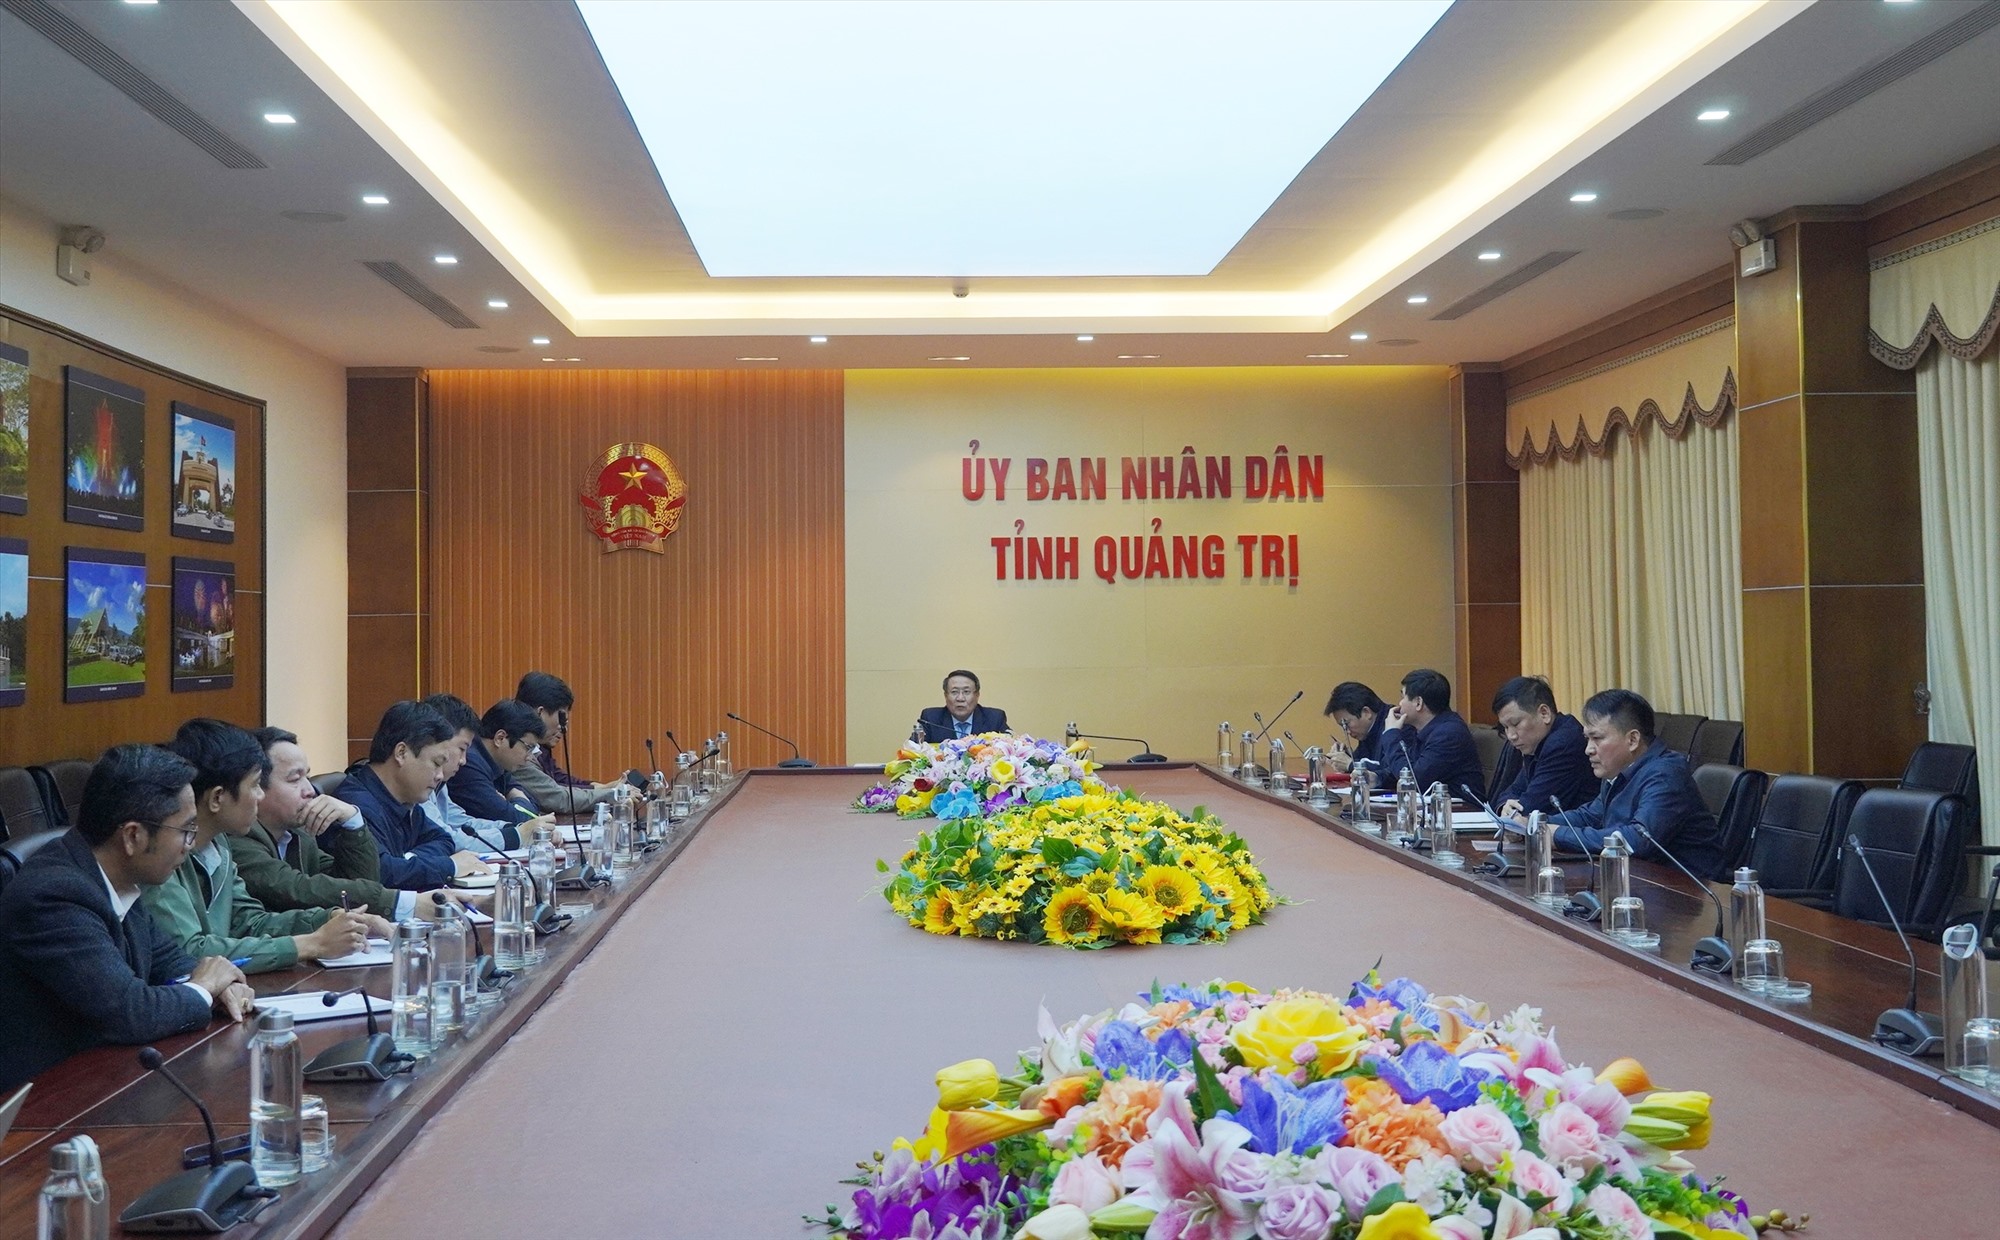 Phó Chủ tịch Thường trực UBND tỉnh Hà Sỹ Đồng lưu ý Công ty CP Tập đoàn Hoành Sơn trong quá trình hoạt động sau khi cấp phép cần đảm bảo giao thông, môi trường - Ảnh: T.N